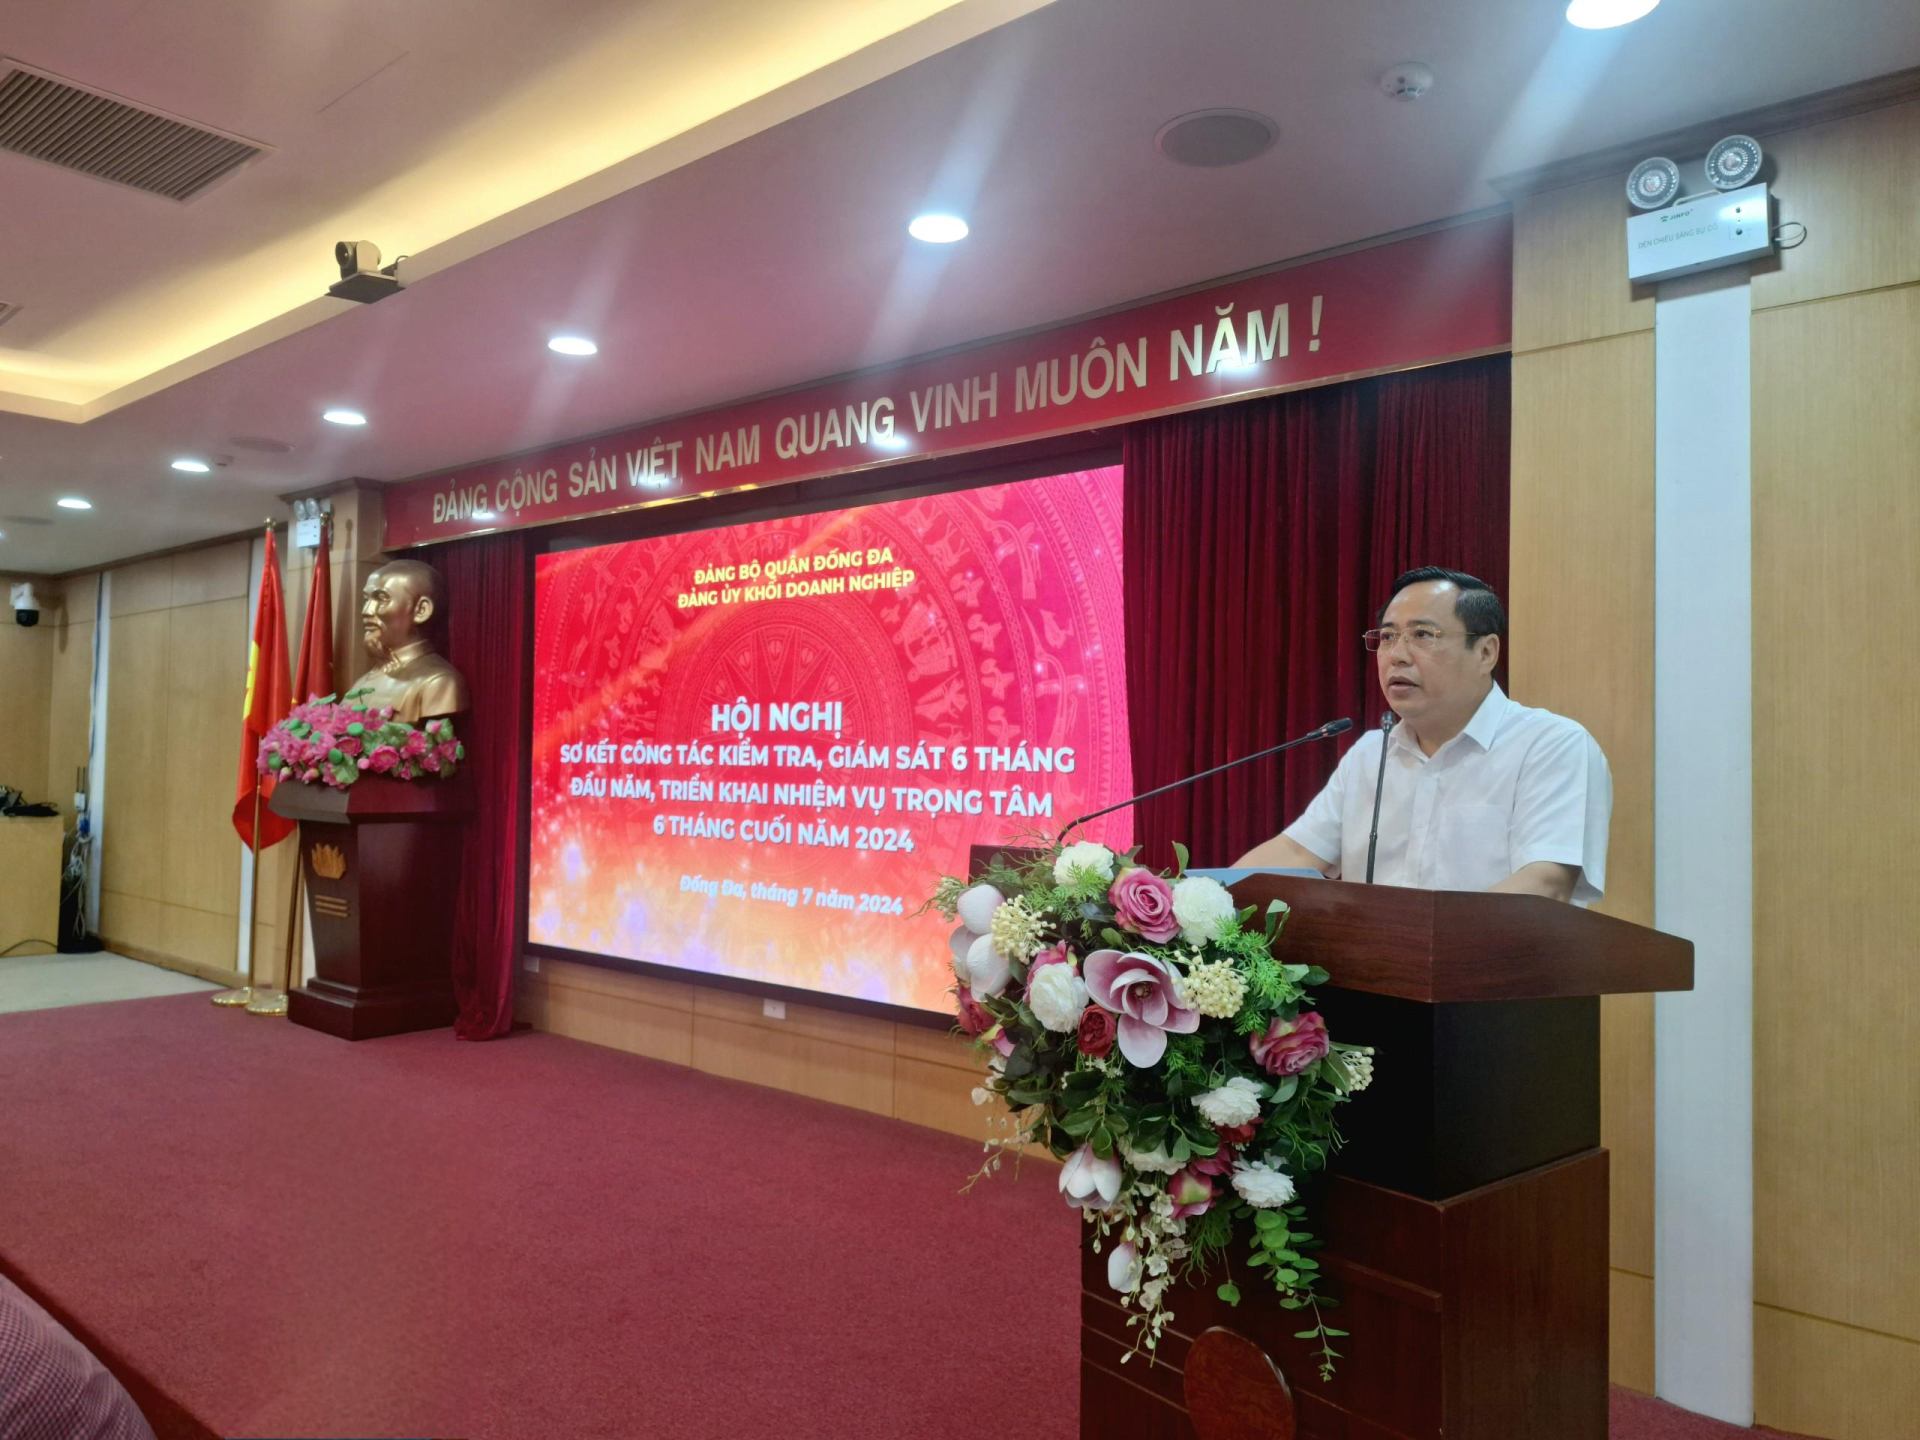 Đồng chí Nguyễn Văn Quang, Phó Bí thư, Chủ nhiệm Uỷ ban Kiểm tra Đảng bộ Khối Doanh nghiệp quận Đống Đa báo cáo tại hội nghị.